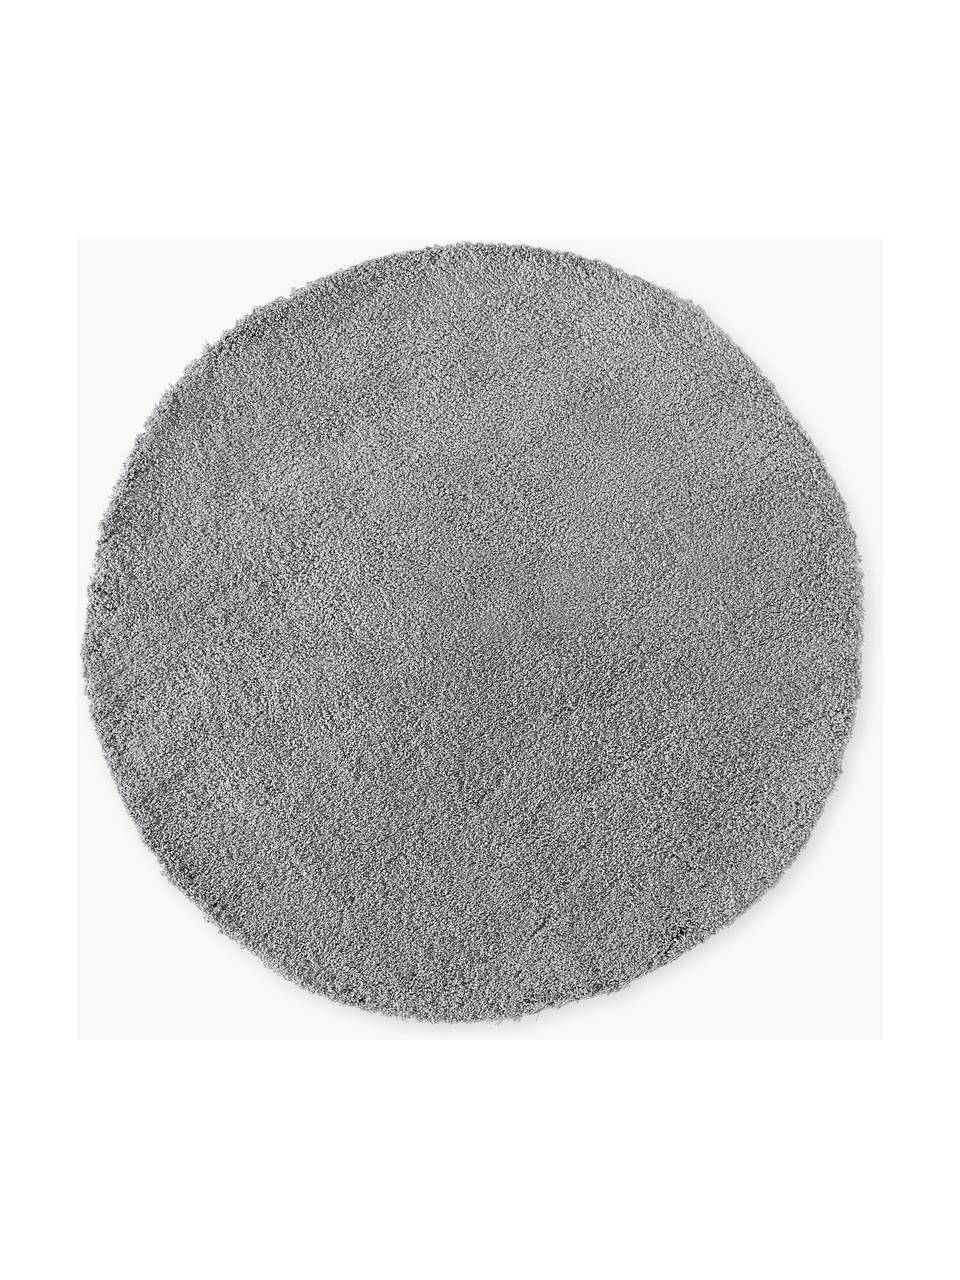 Načechraný kulatý koberec s vysokým vlasem Leighton, Šedá, Ø 120 cm (velikost S)